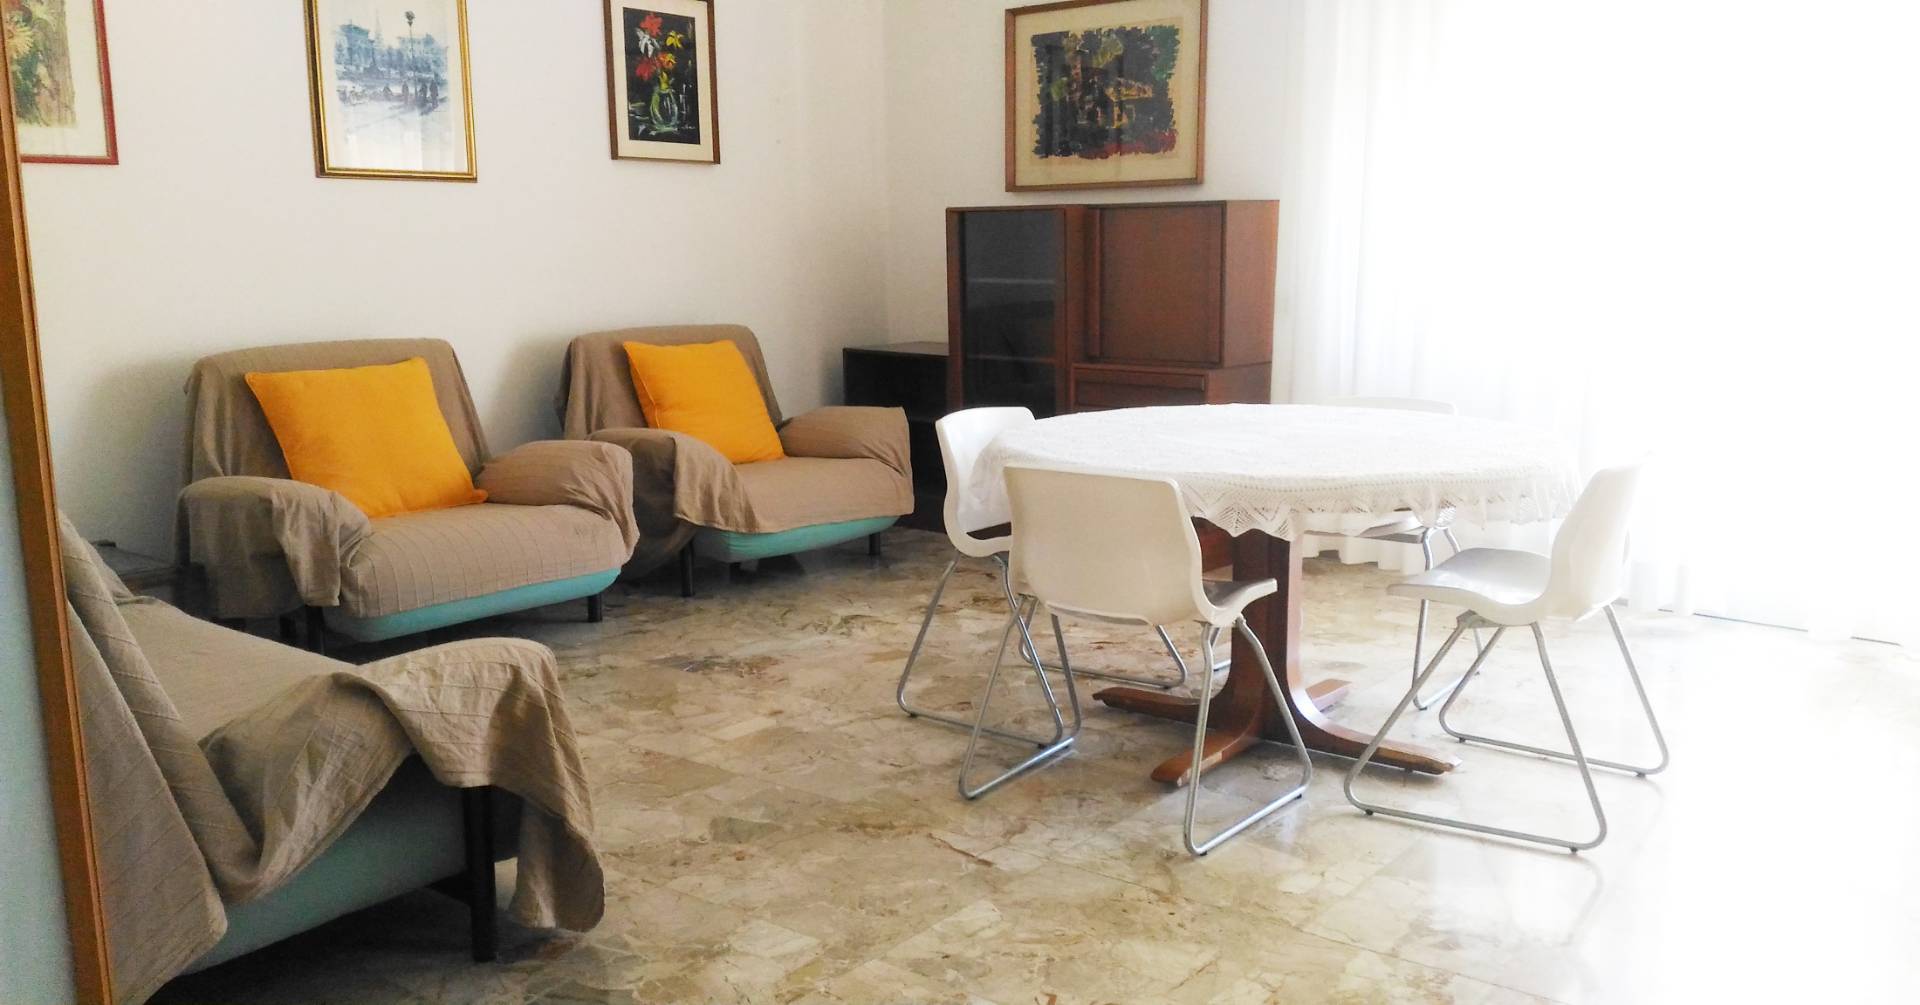 Appartamento in vendita a Udine, 5 locali, zona Località: VIAAQUILEIA, prezzo € 98.000 | CambioCasa.it